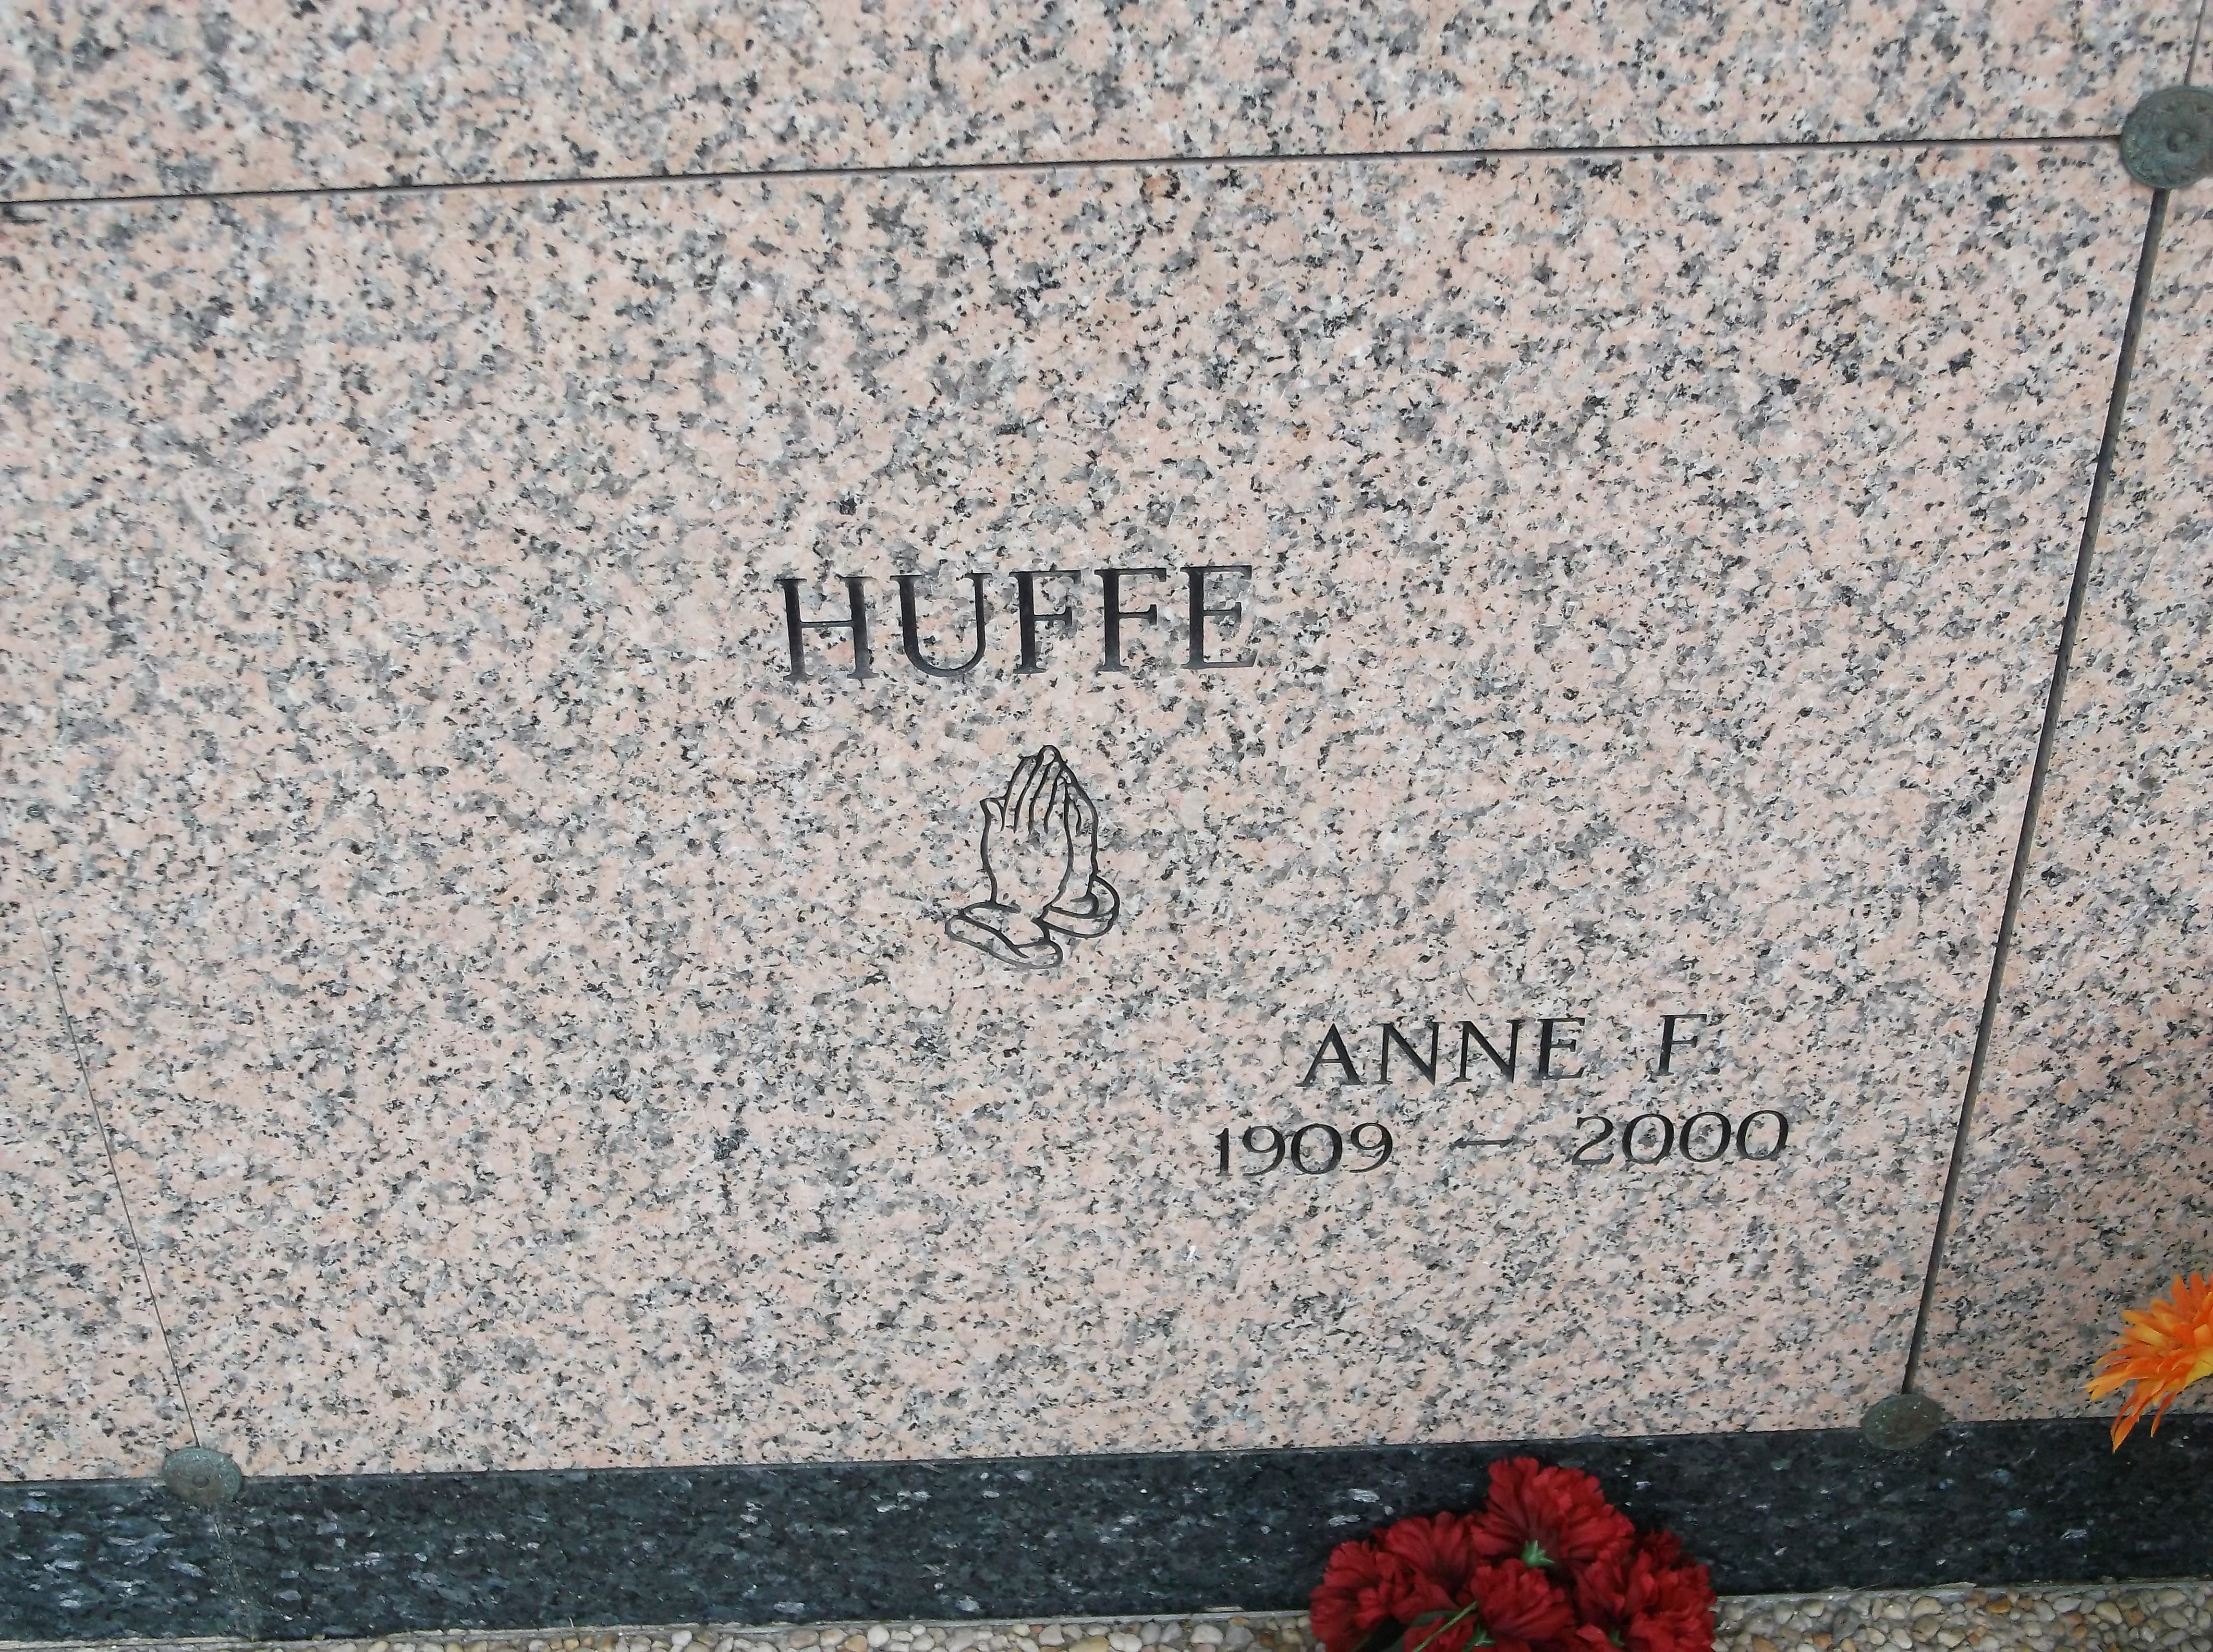 Anne F Huffe